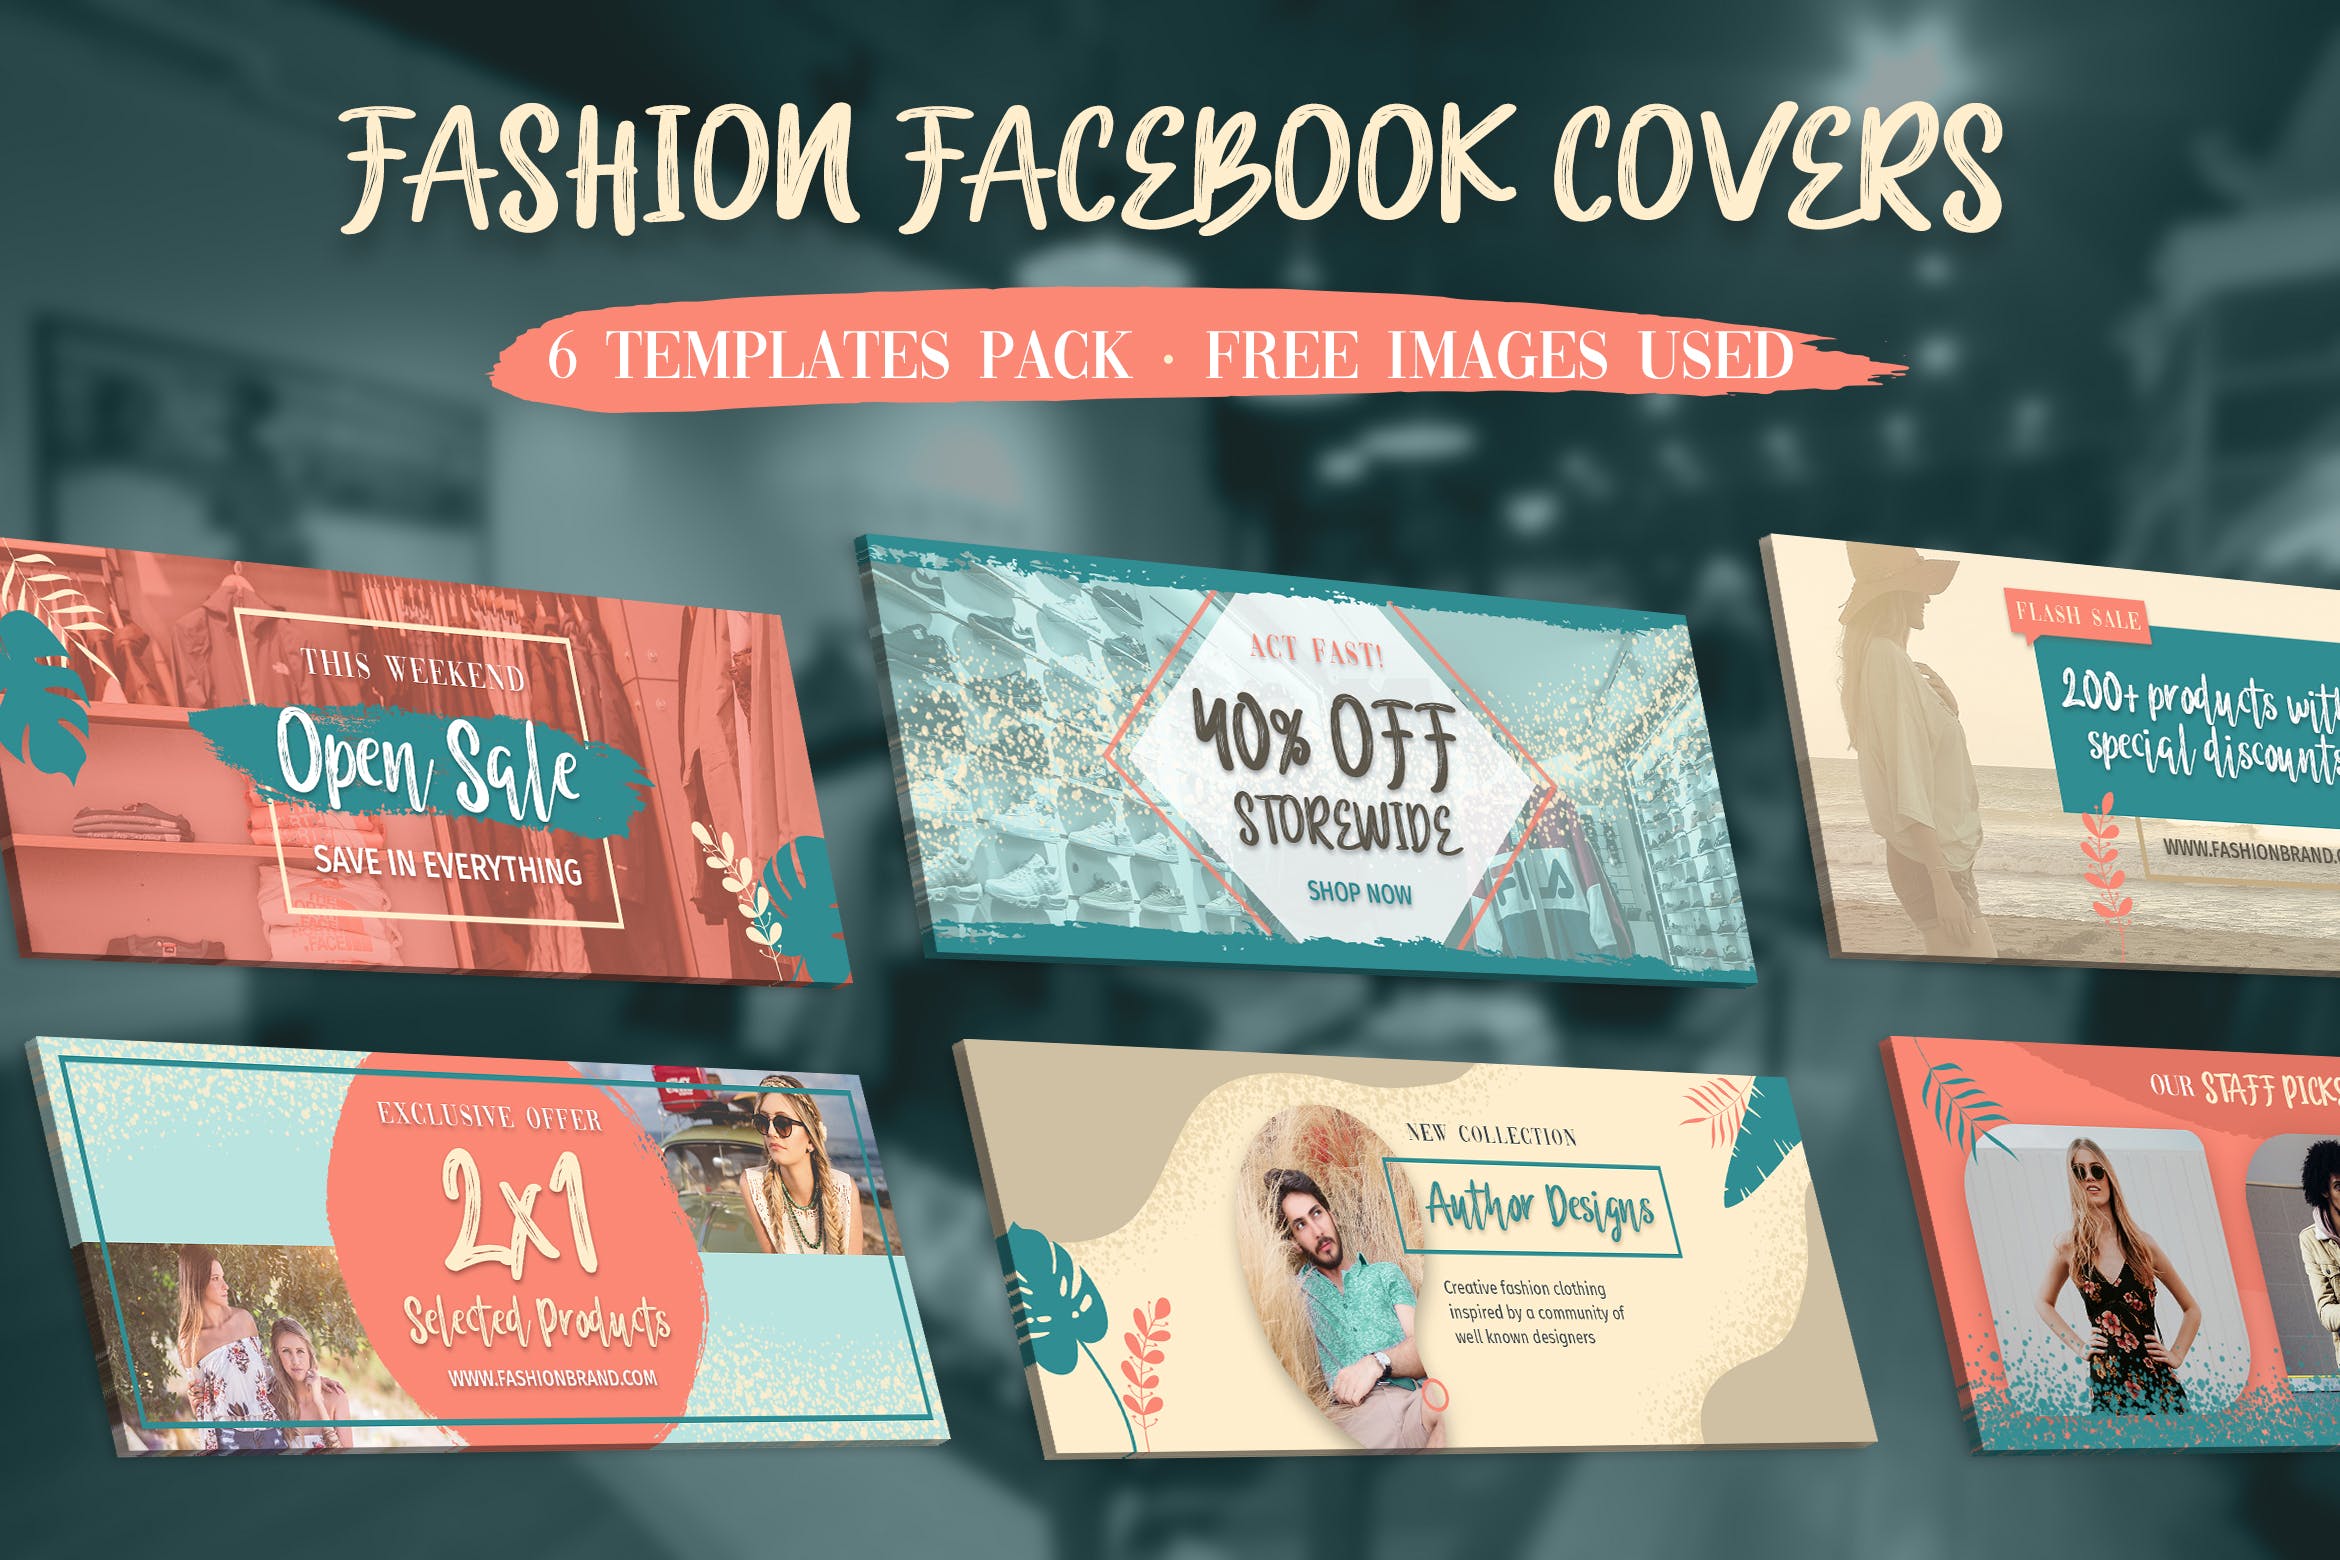 时尚品牌推广Facebook主页封面设计模板第一素材精选 Facebook Covers插图